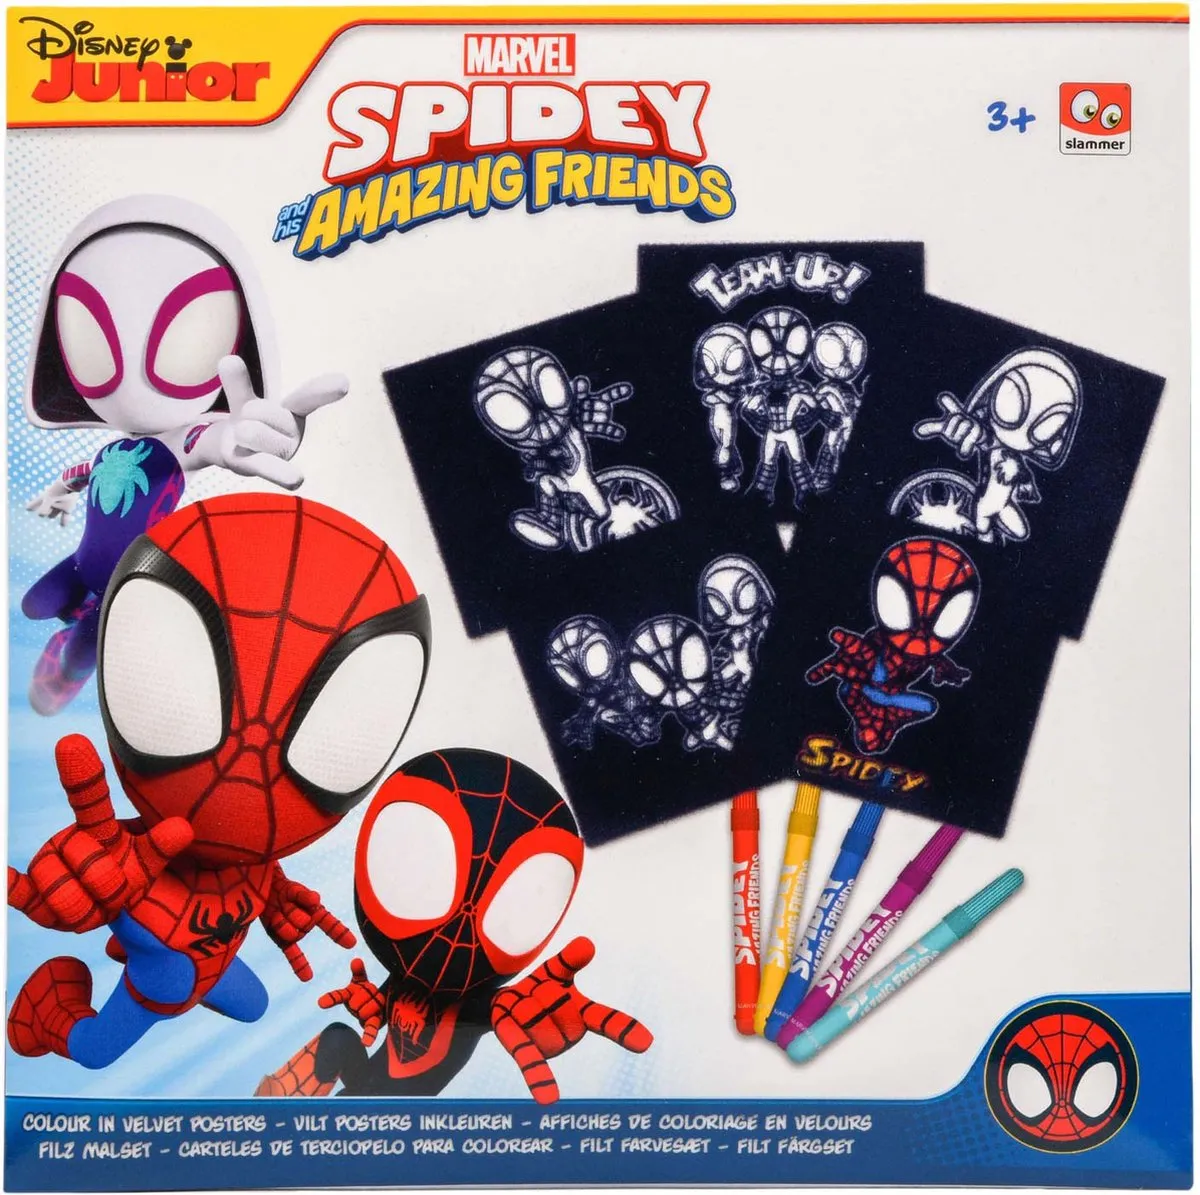 Spiderman Vilt Kleurplaten - 5 stuks - Viltkleuren - 18 x 18 cm - Luxe Kleurplaten van Marvel Avengers Spiderman - Marvel Spidey Amazing Friends Kleuren / Tekenen - Creatief Spelen voor Kinderen speelgoed